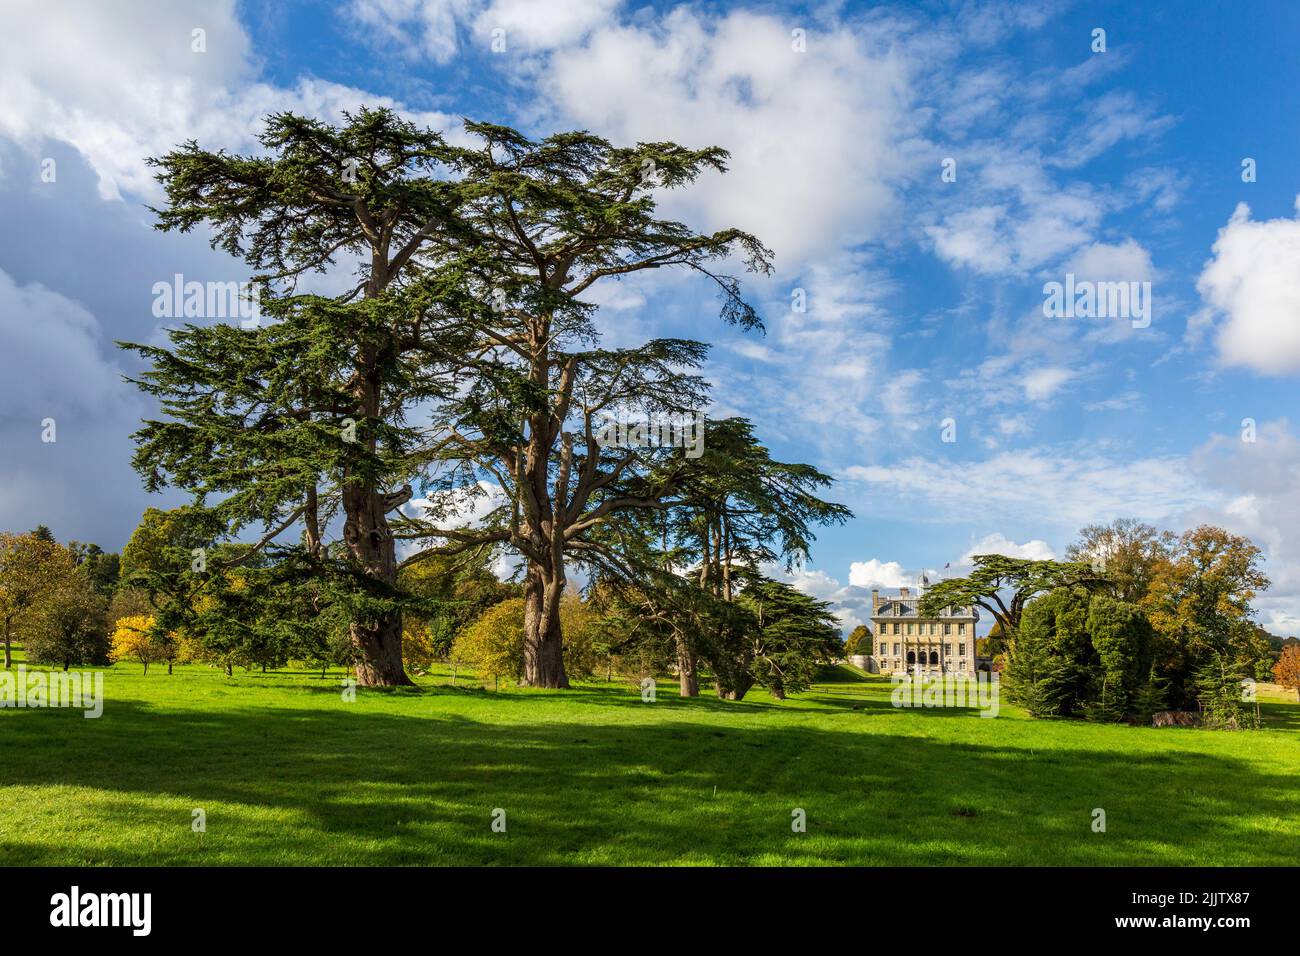 Cèdre libanais dans le parc de Kingston Lacy House, Dorset, Angleterre Banque D'Images